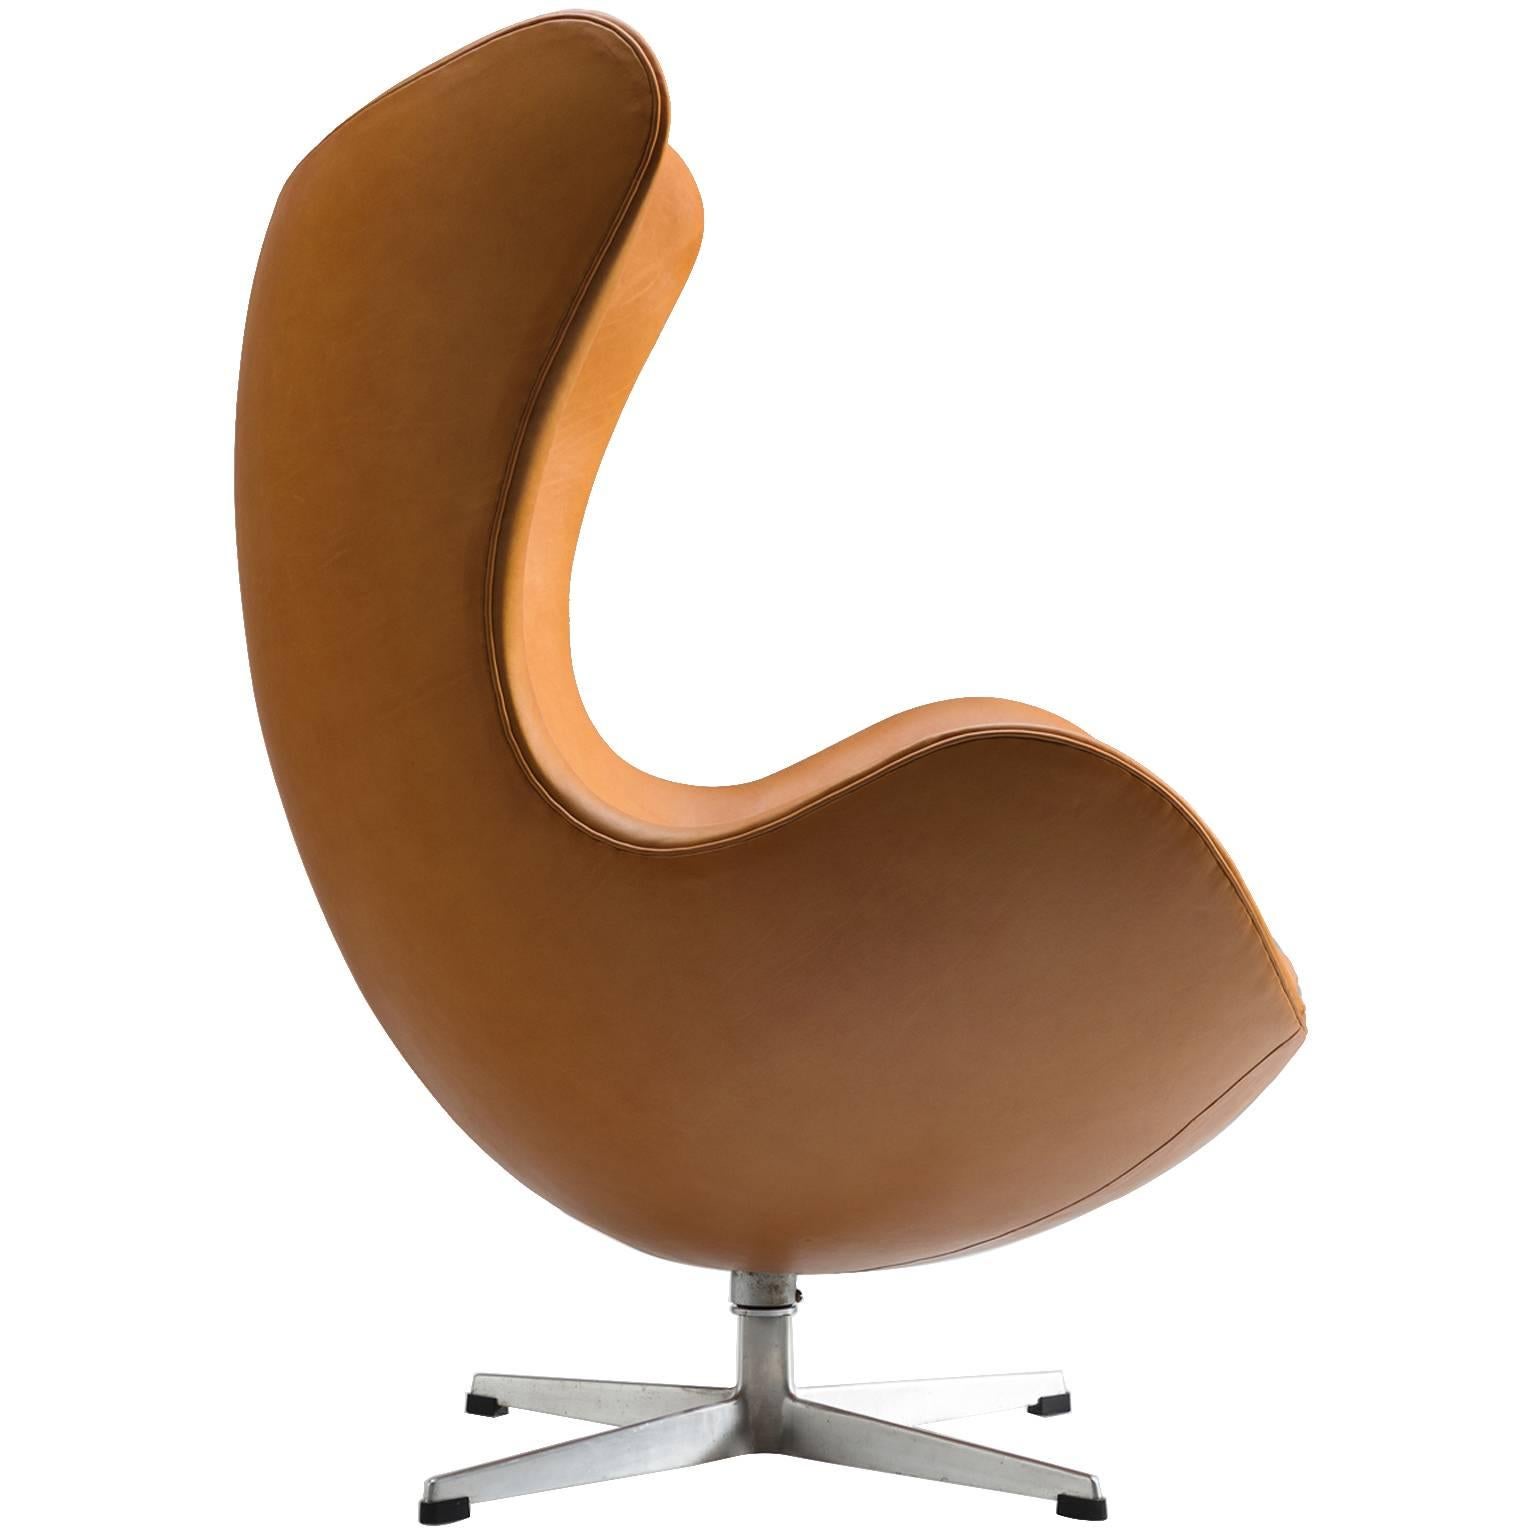 Arne Jacobsen Newly Upholstered 'Egg' Chair